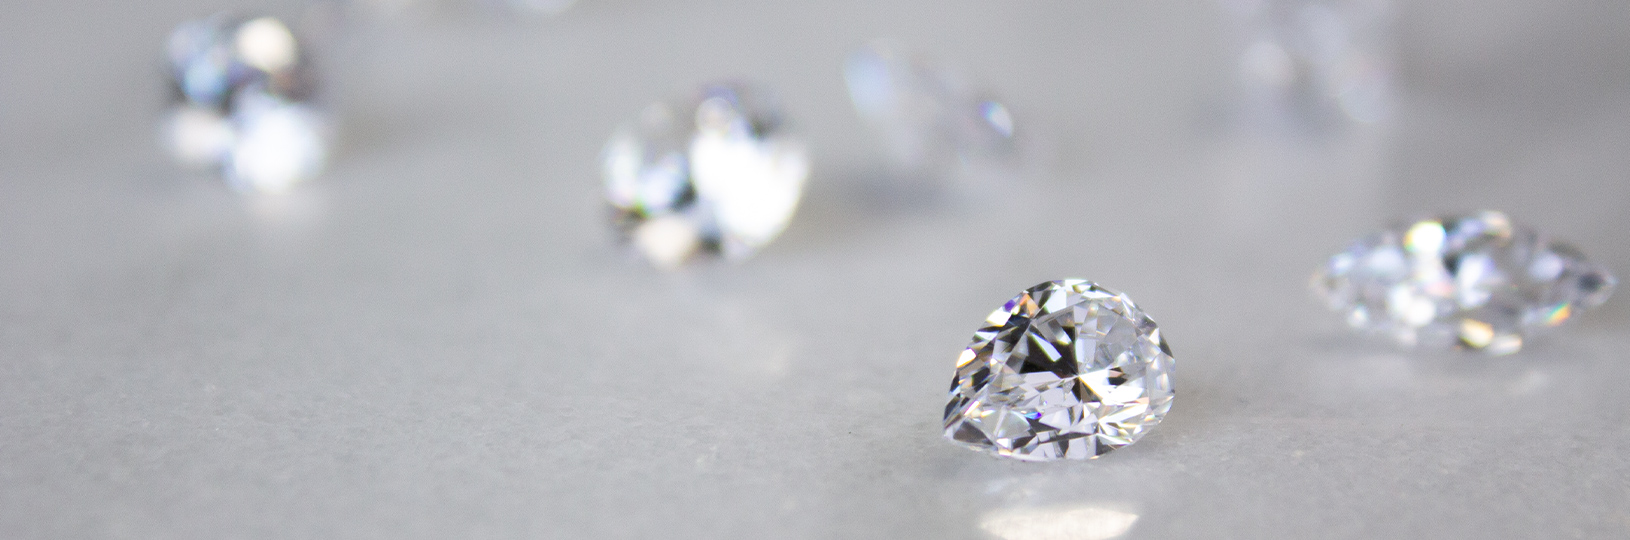 Loose lab created diamond simulants.